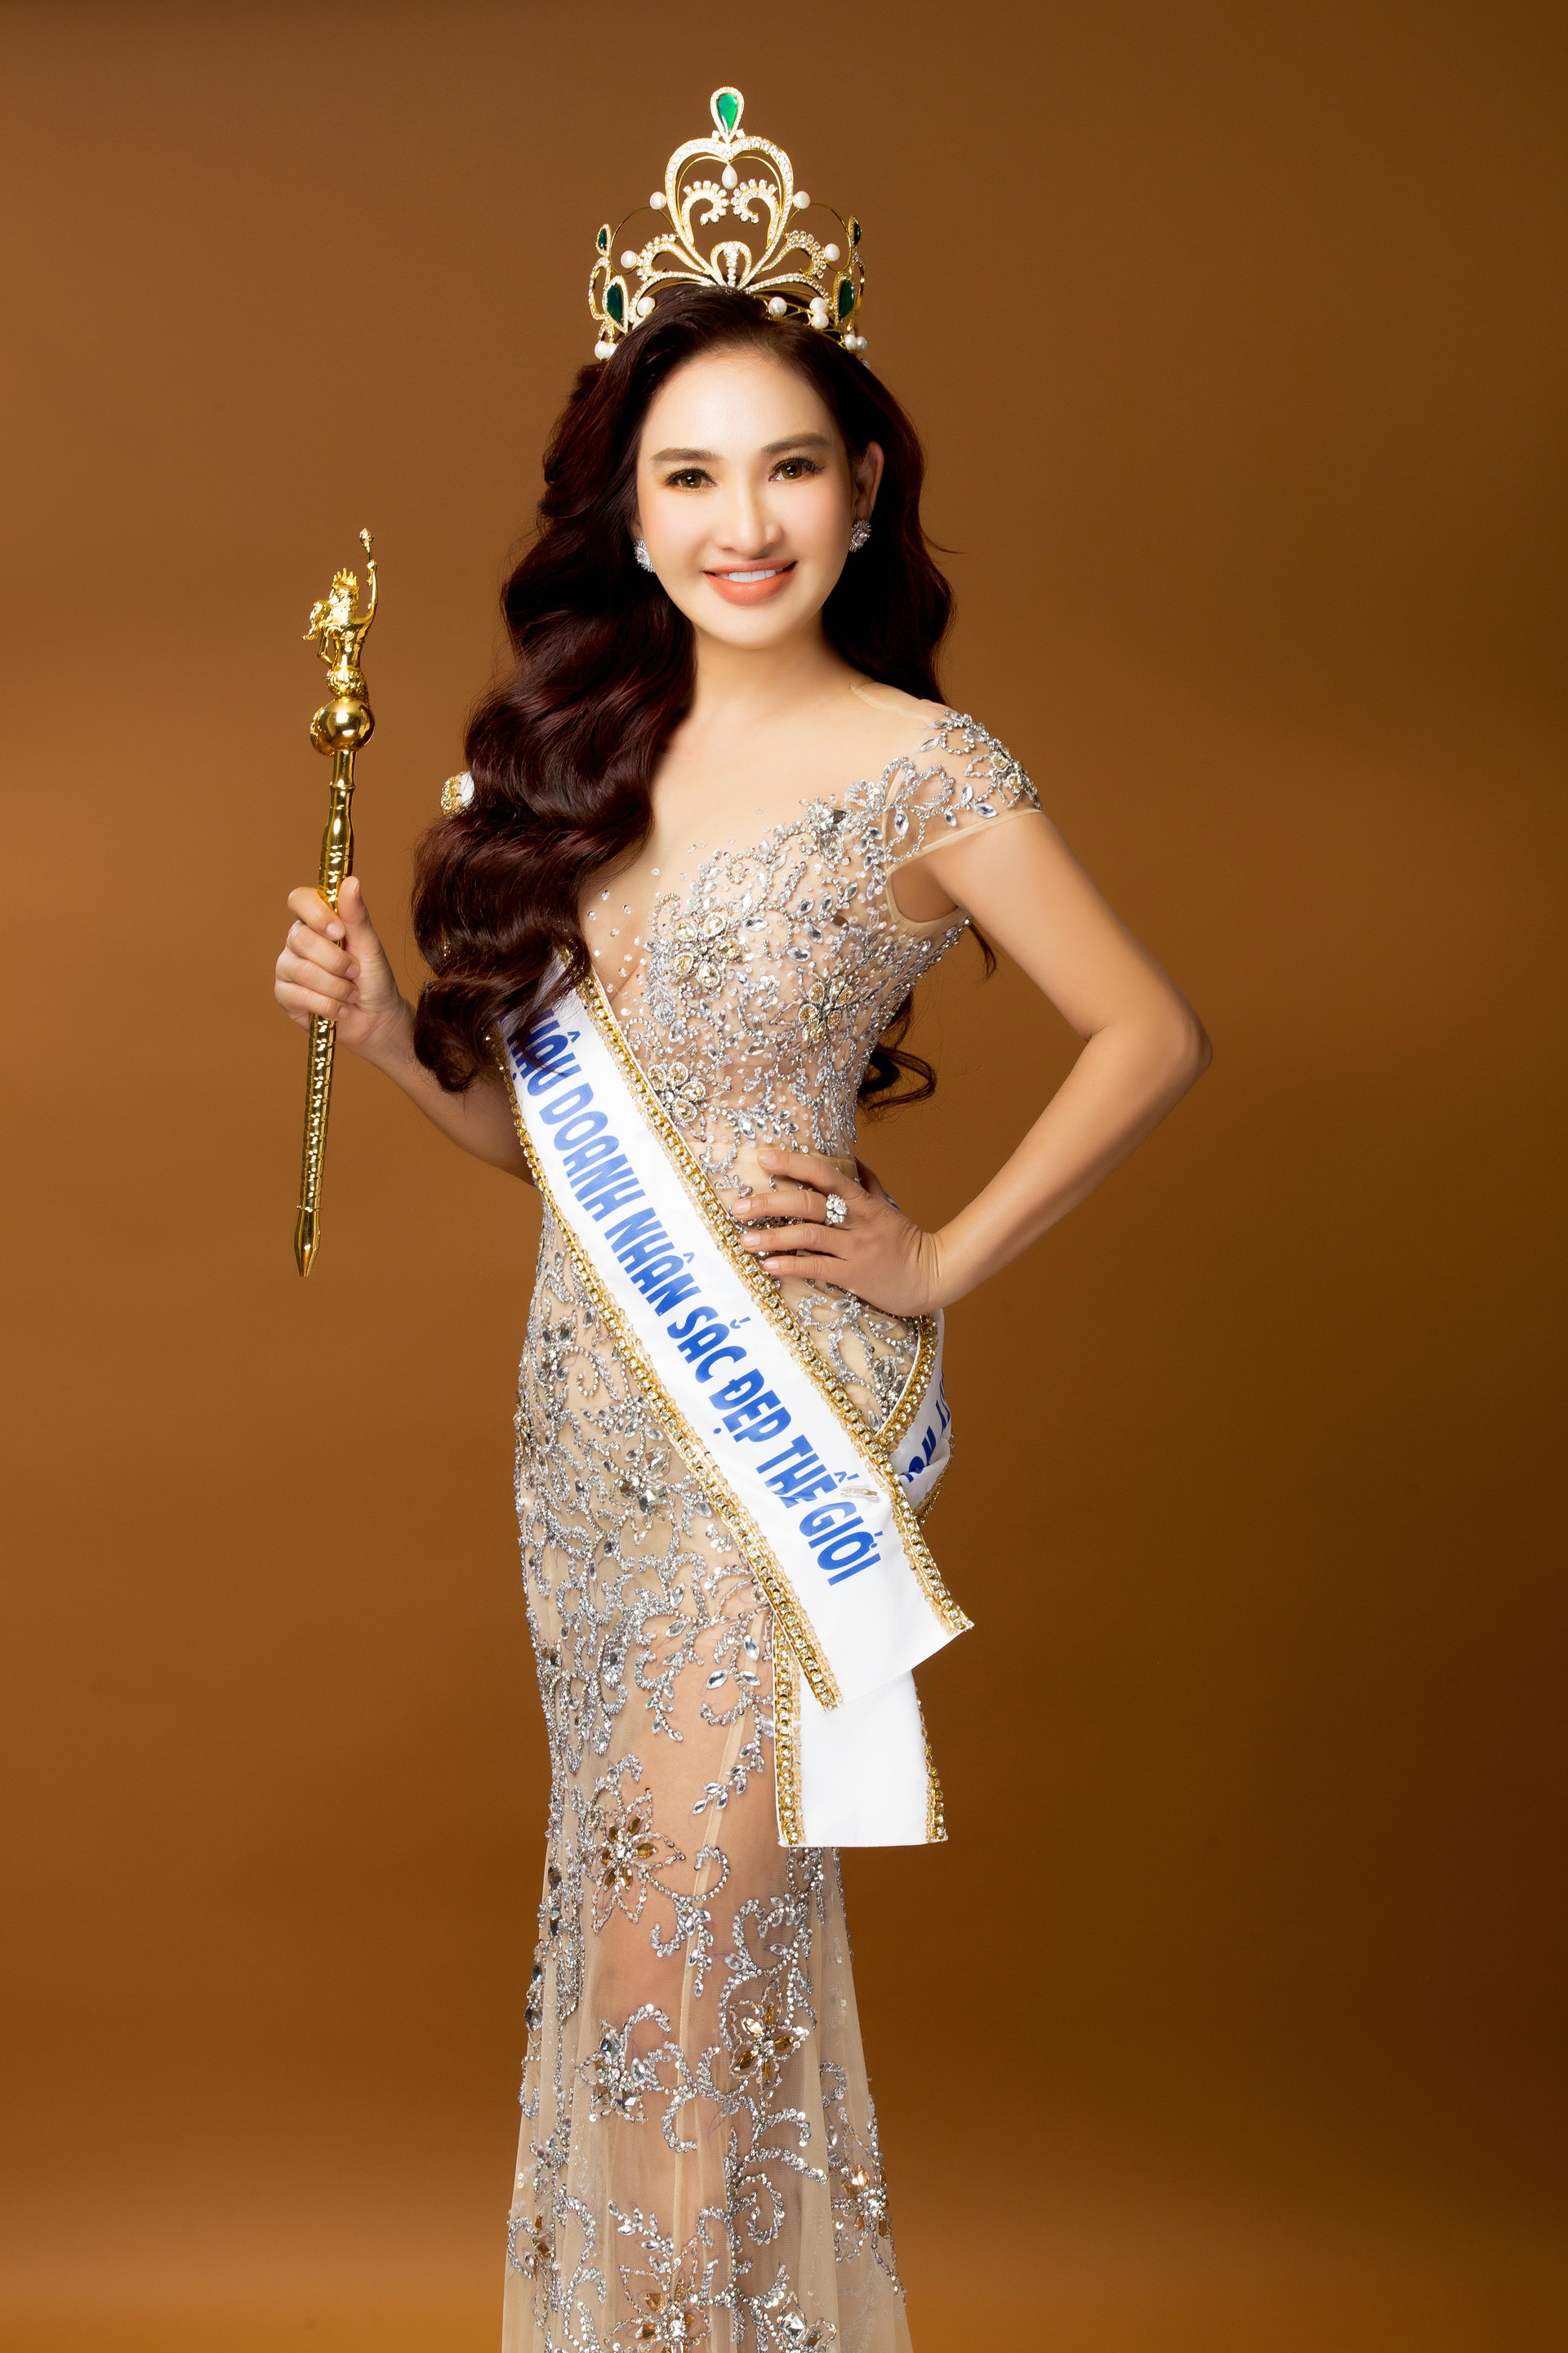 Hoa hậu Thái Phượng mong muốn nâng cao sức khỏe người Việt